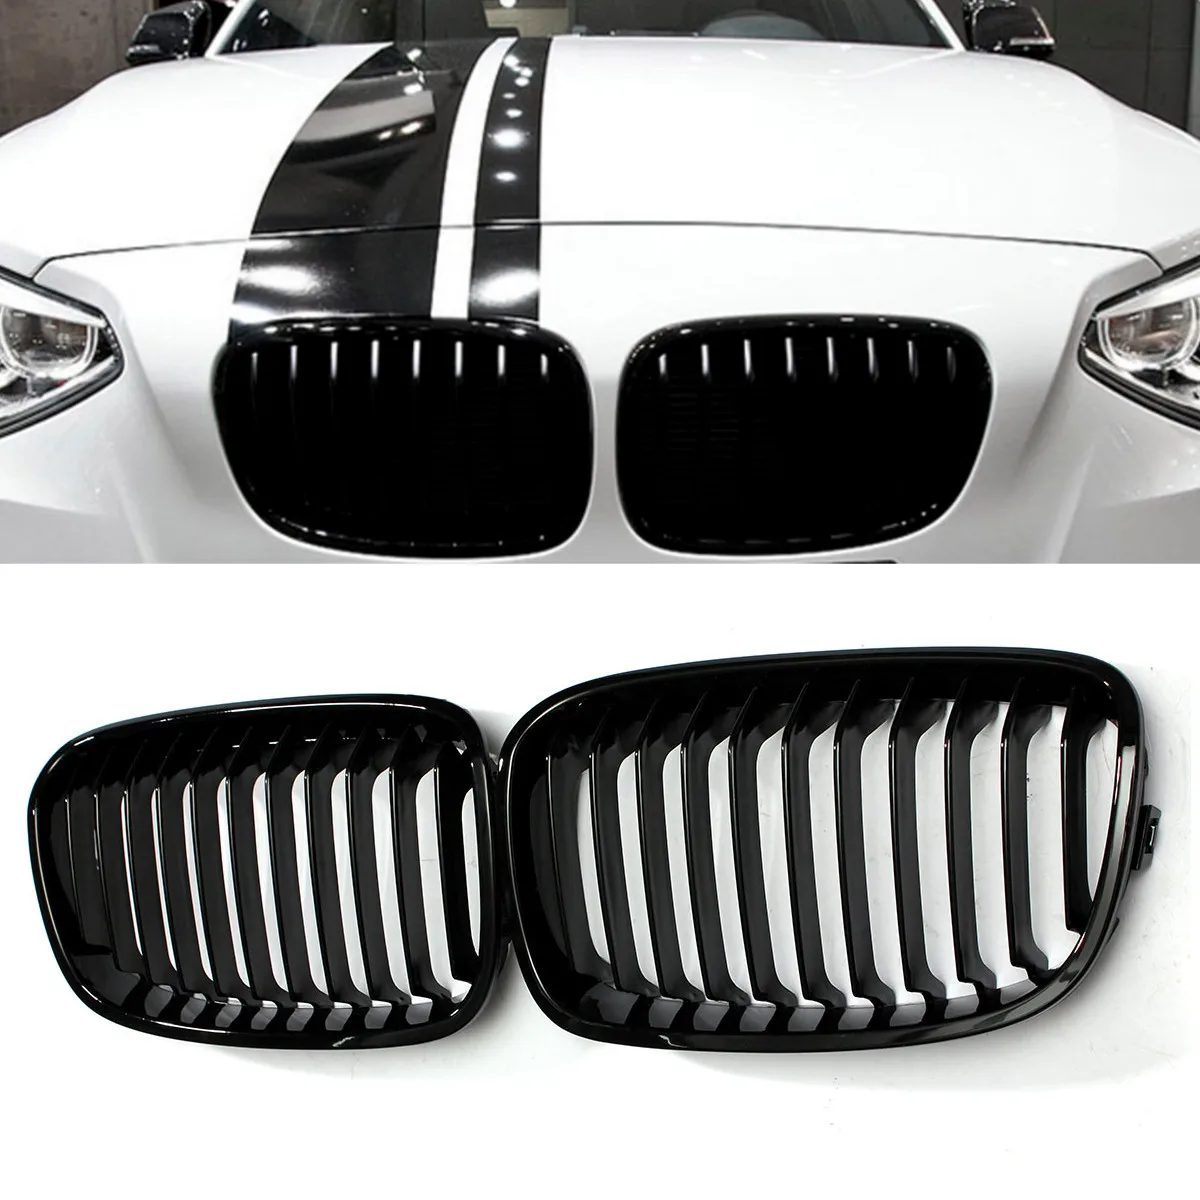 

2 шт. глянцевый черный Автомобильный передний бампер радиатор решетка гоночный гриль для BMW F20 F21 1 серия 2011 2012 2013 2014 автостайлинг